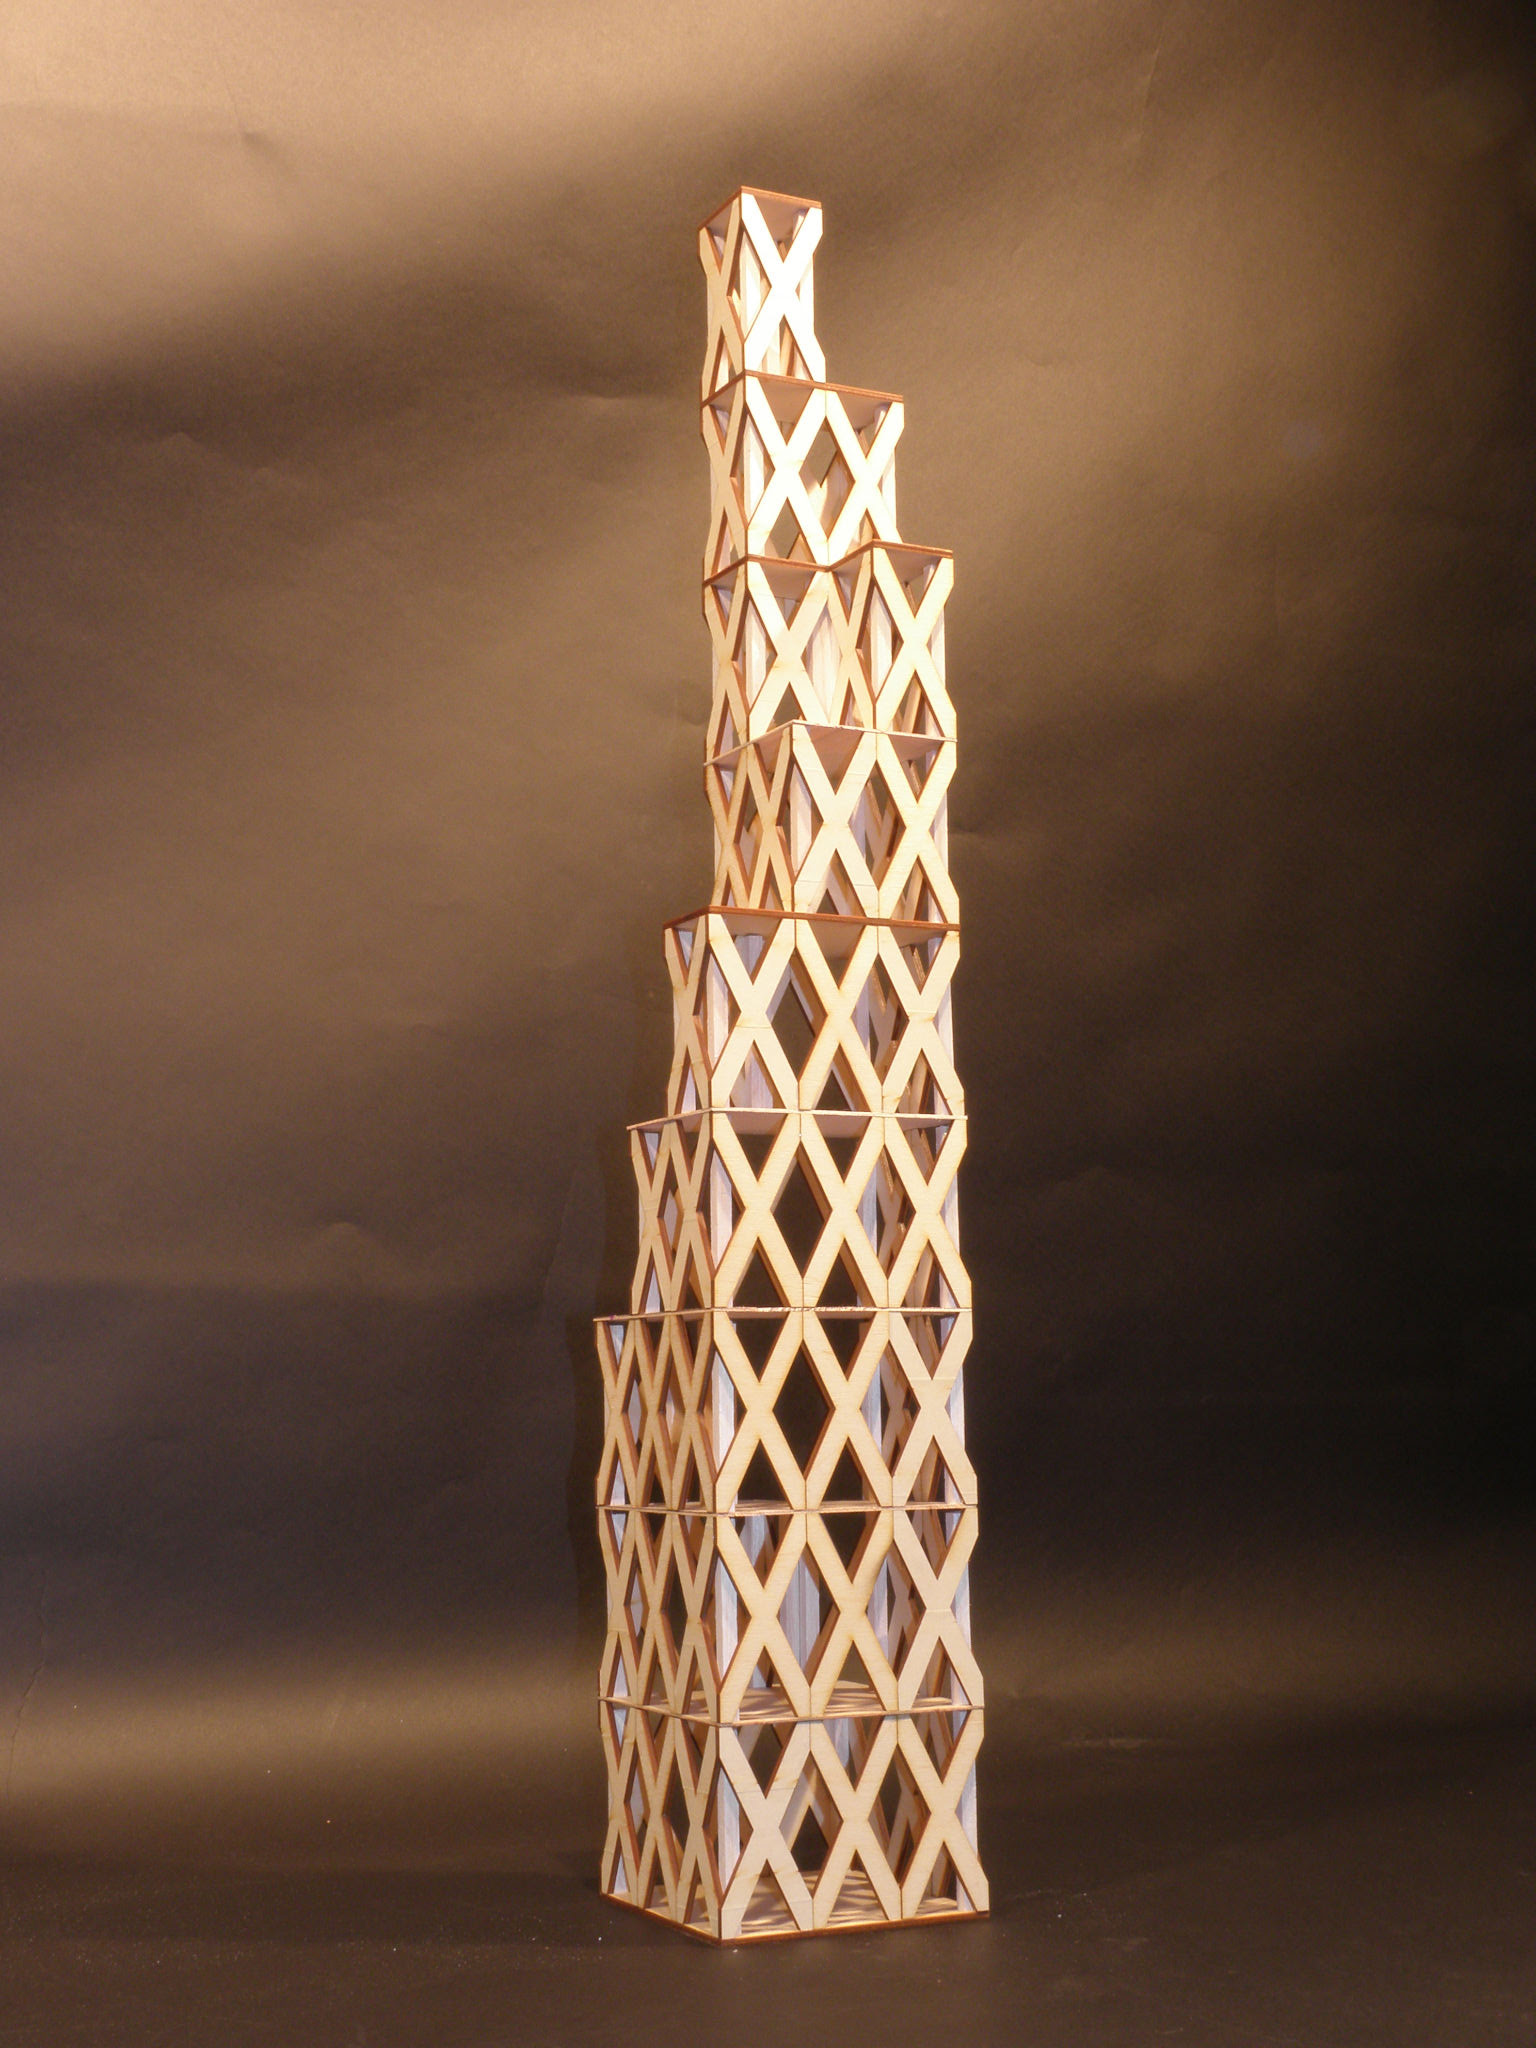 Башня из палочек игра. Башня из деревяшек. Башня из дерева. Башни из деревянных брусков. Башня из деревянных палочек.